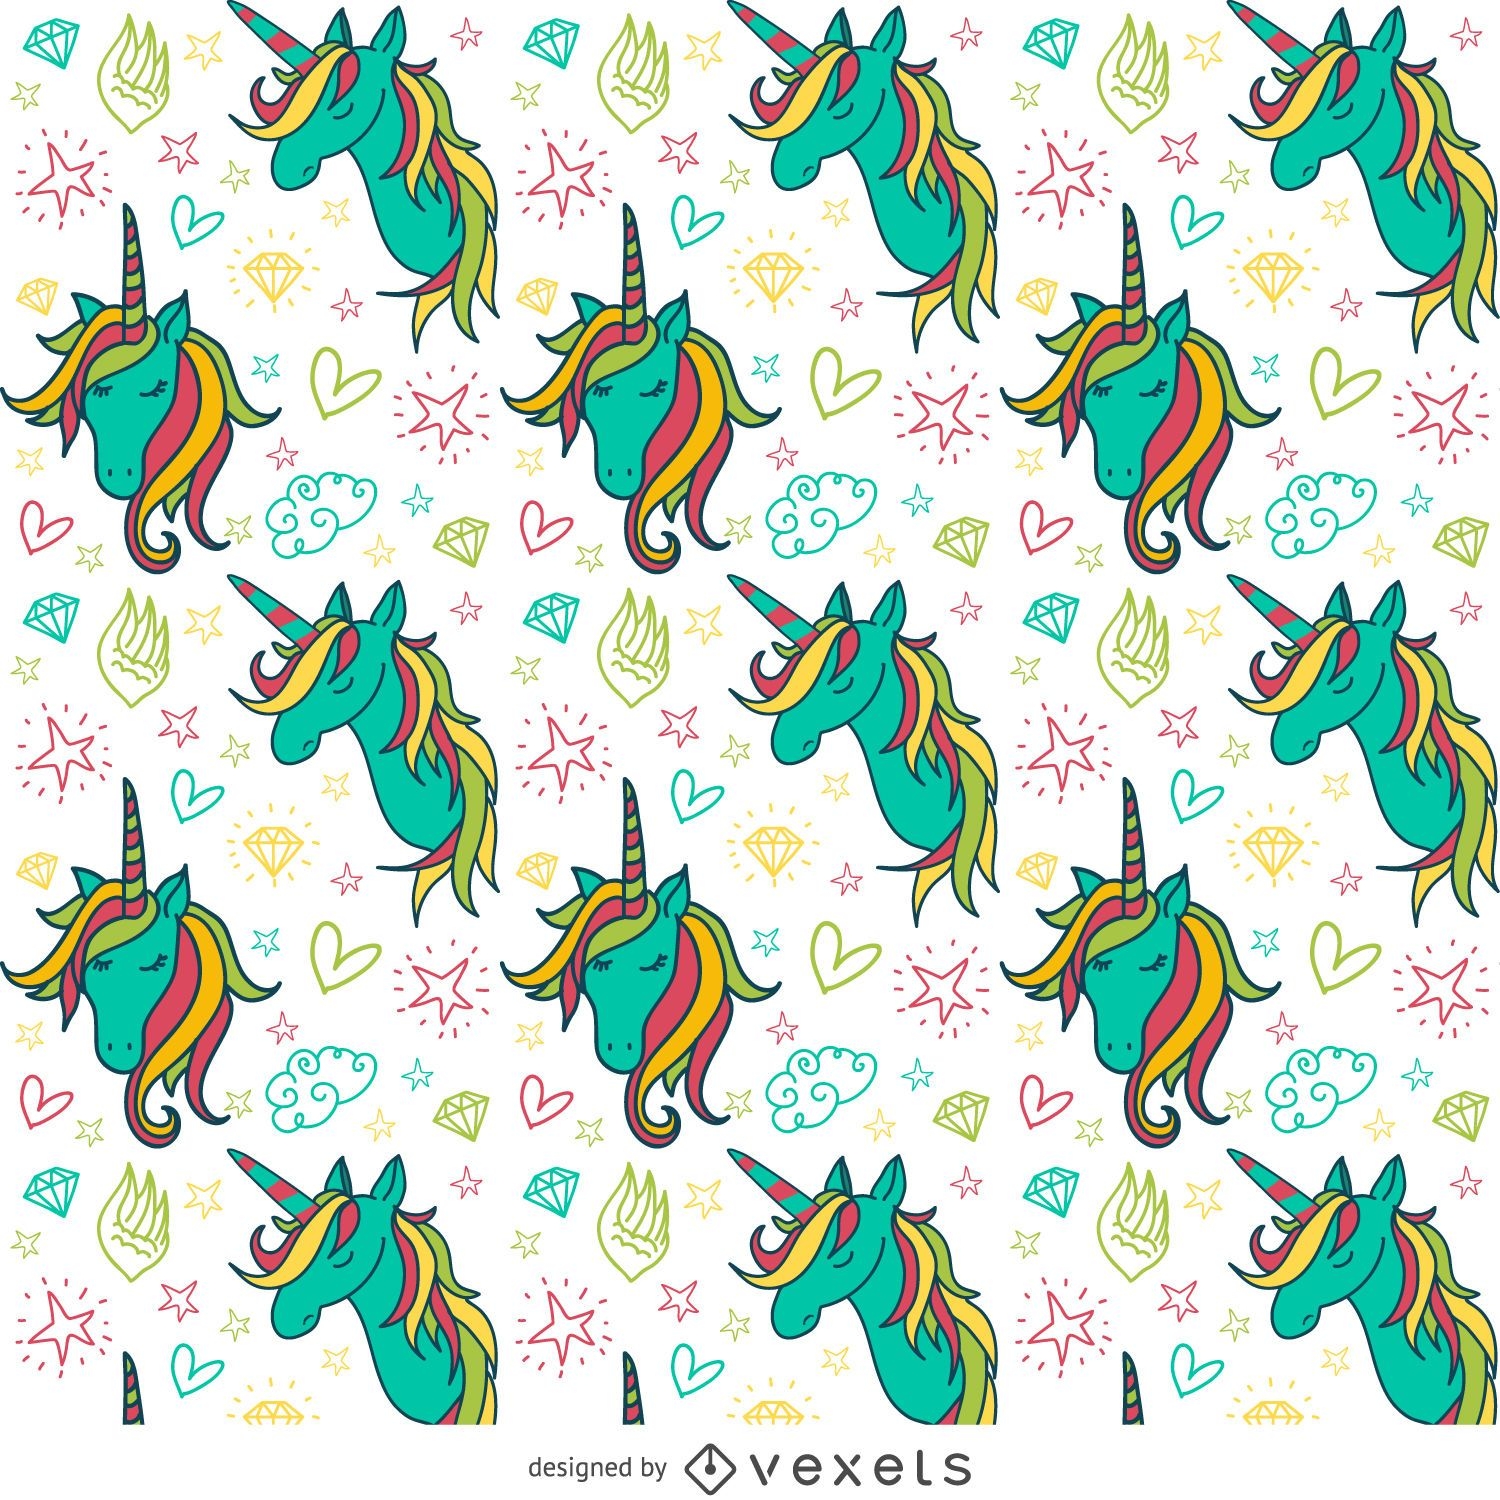 Colorful unicorn drawings pattern